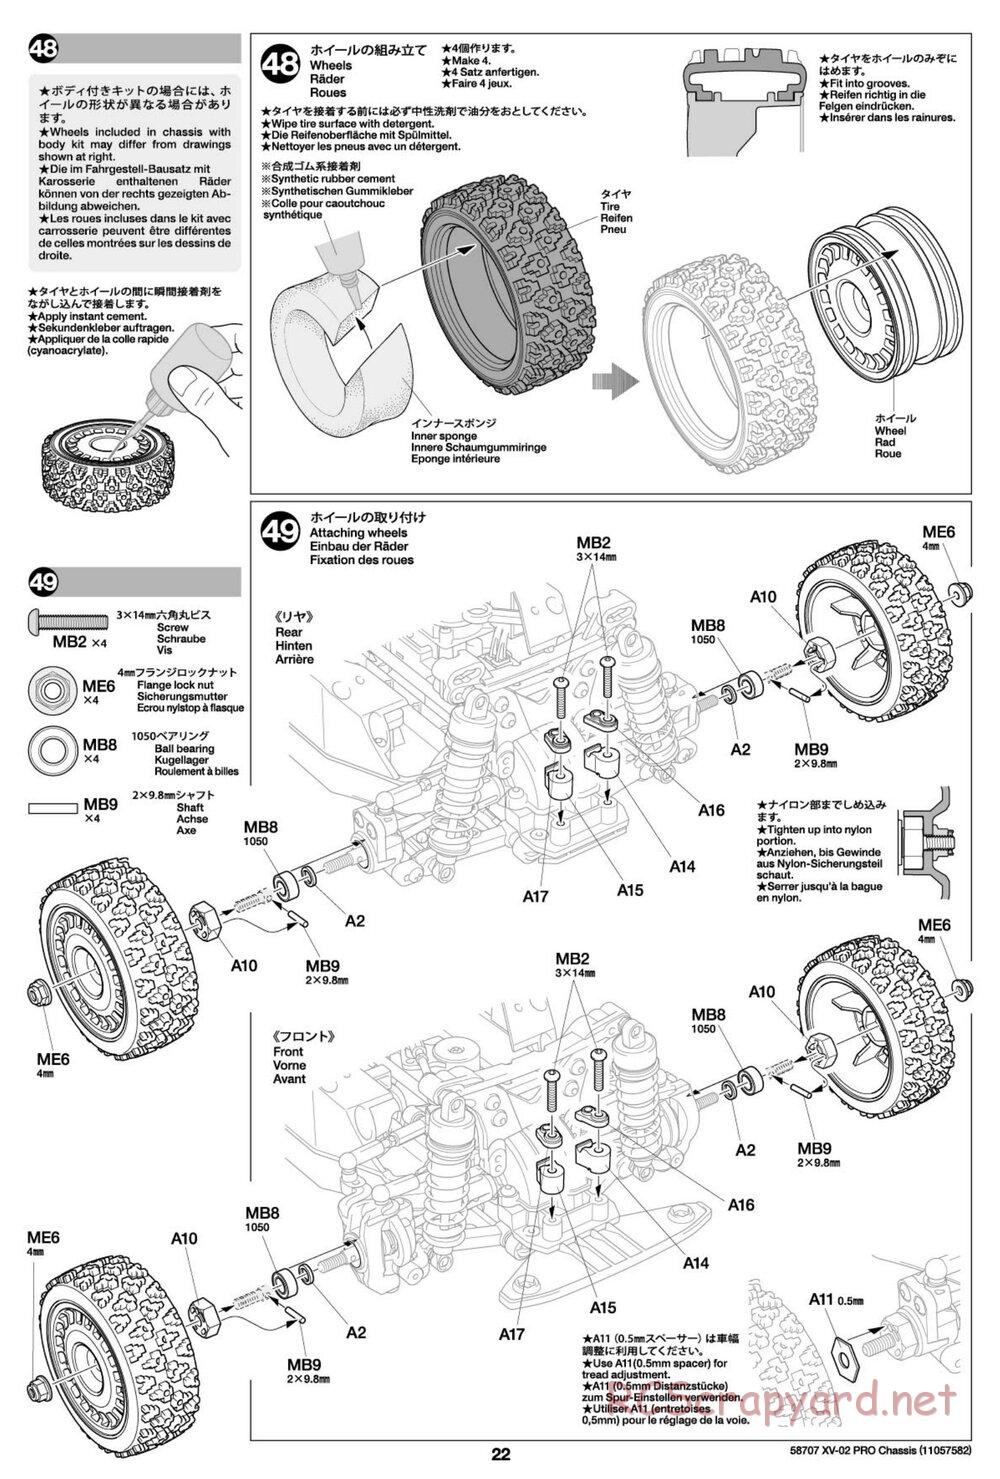 Tamiya - XV-02 Pro Chassis - Manual - Page 22